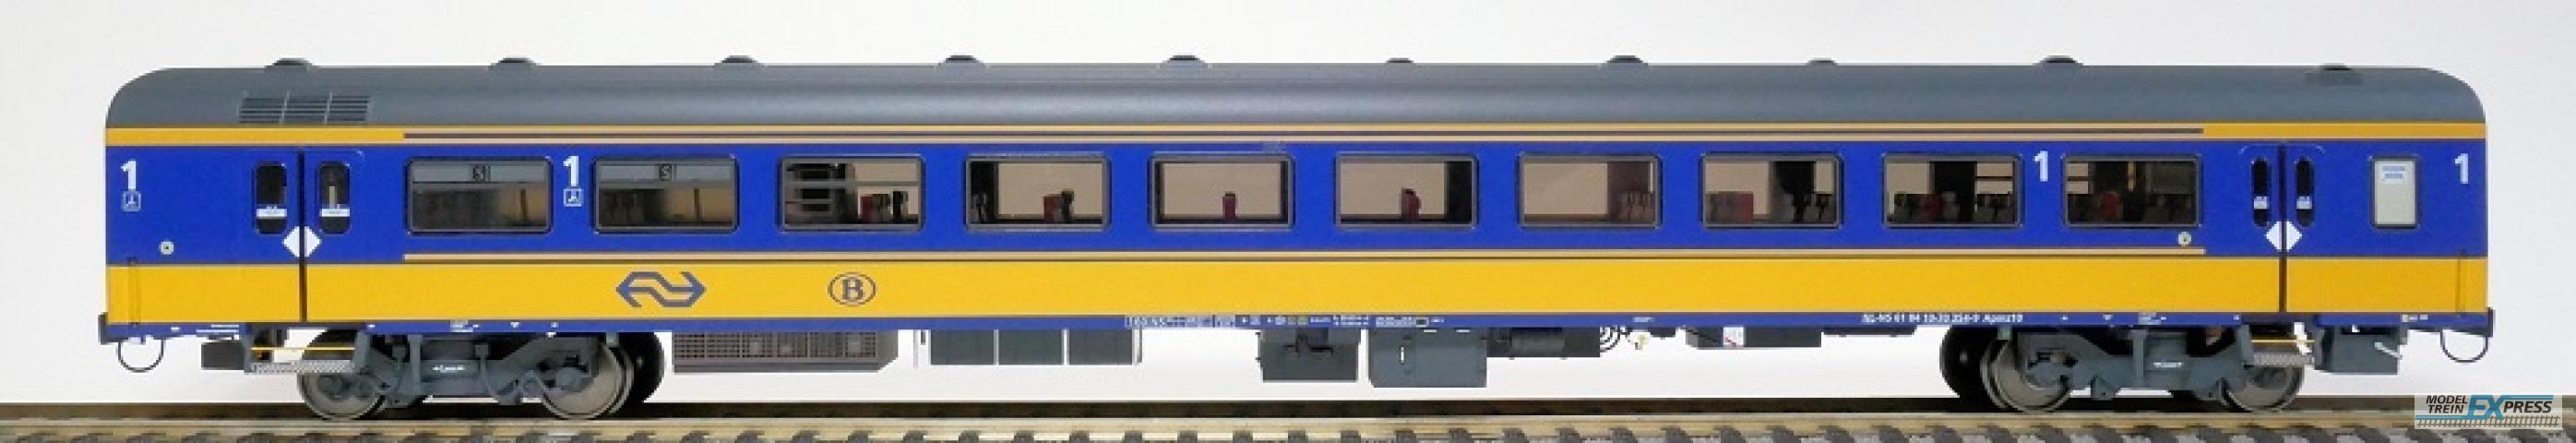 Exact-train 11027 NS ICRm Garnitur 2 (Amsterdam - Brussel) für die Hsl-Strecke eingesetzt Reisezugwagen Apmz10 ( Farbe Gelb / Blau), Ep. VI